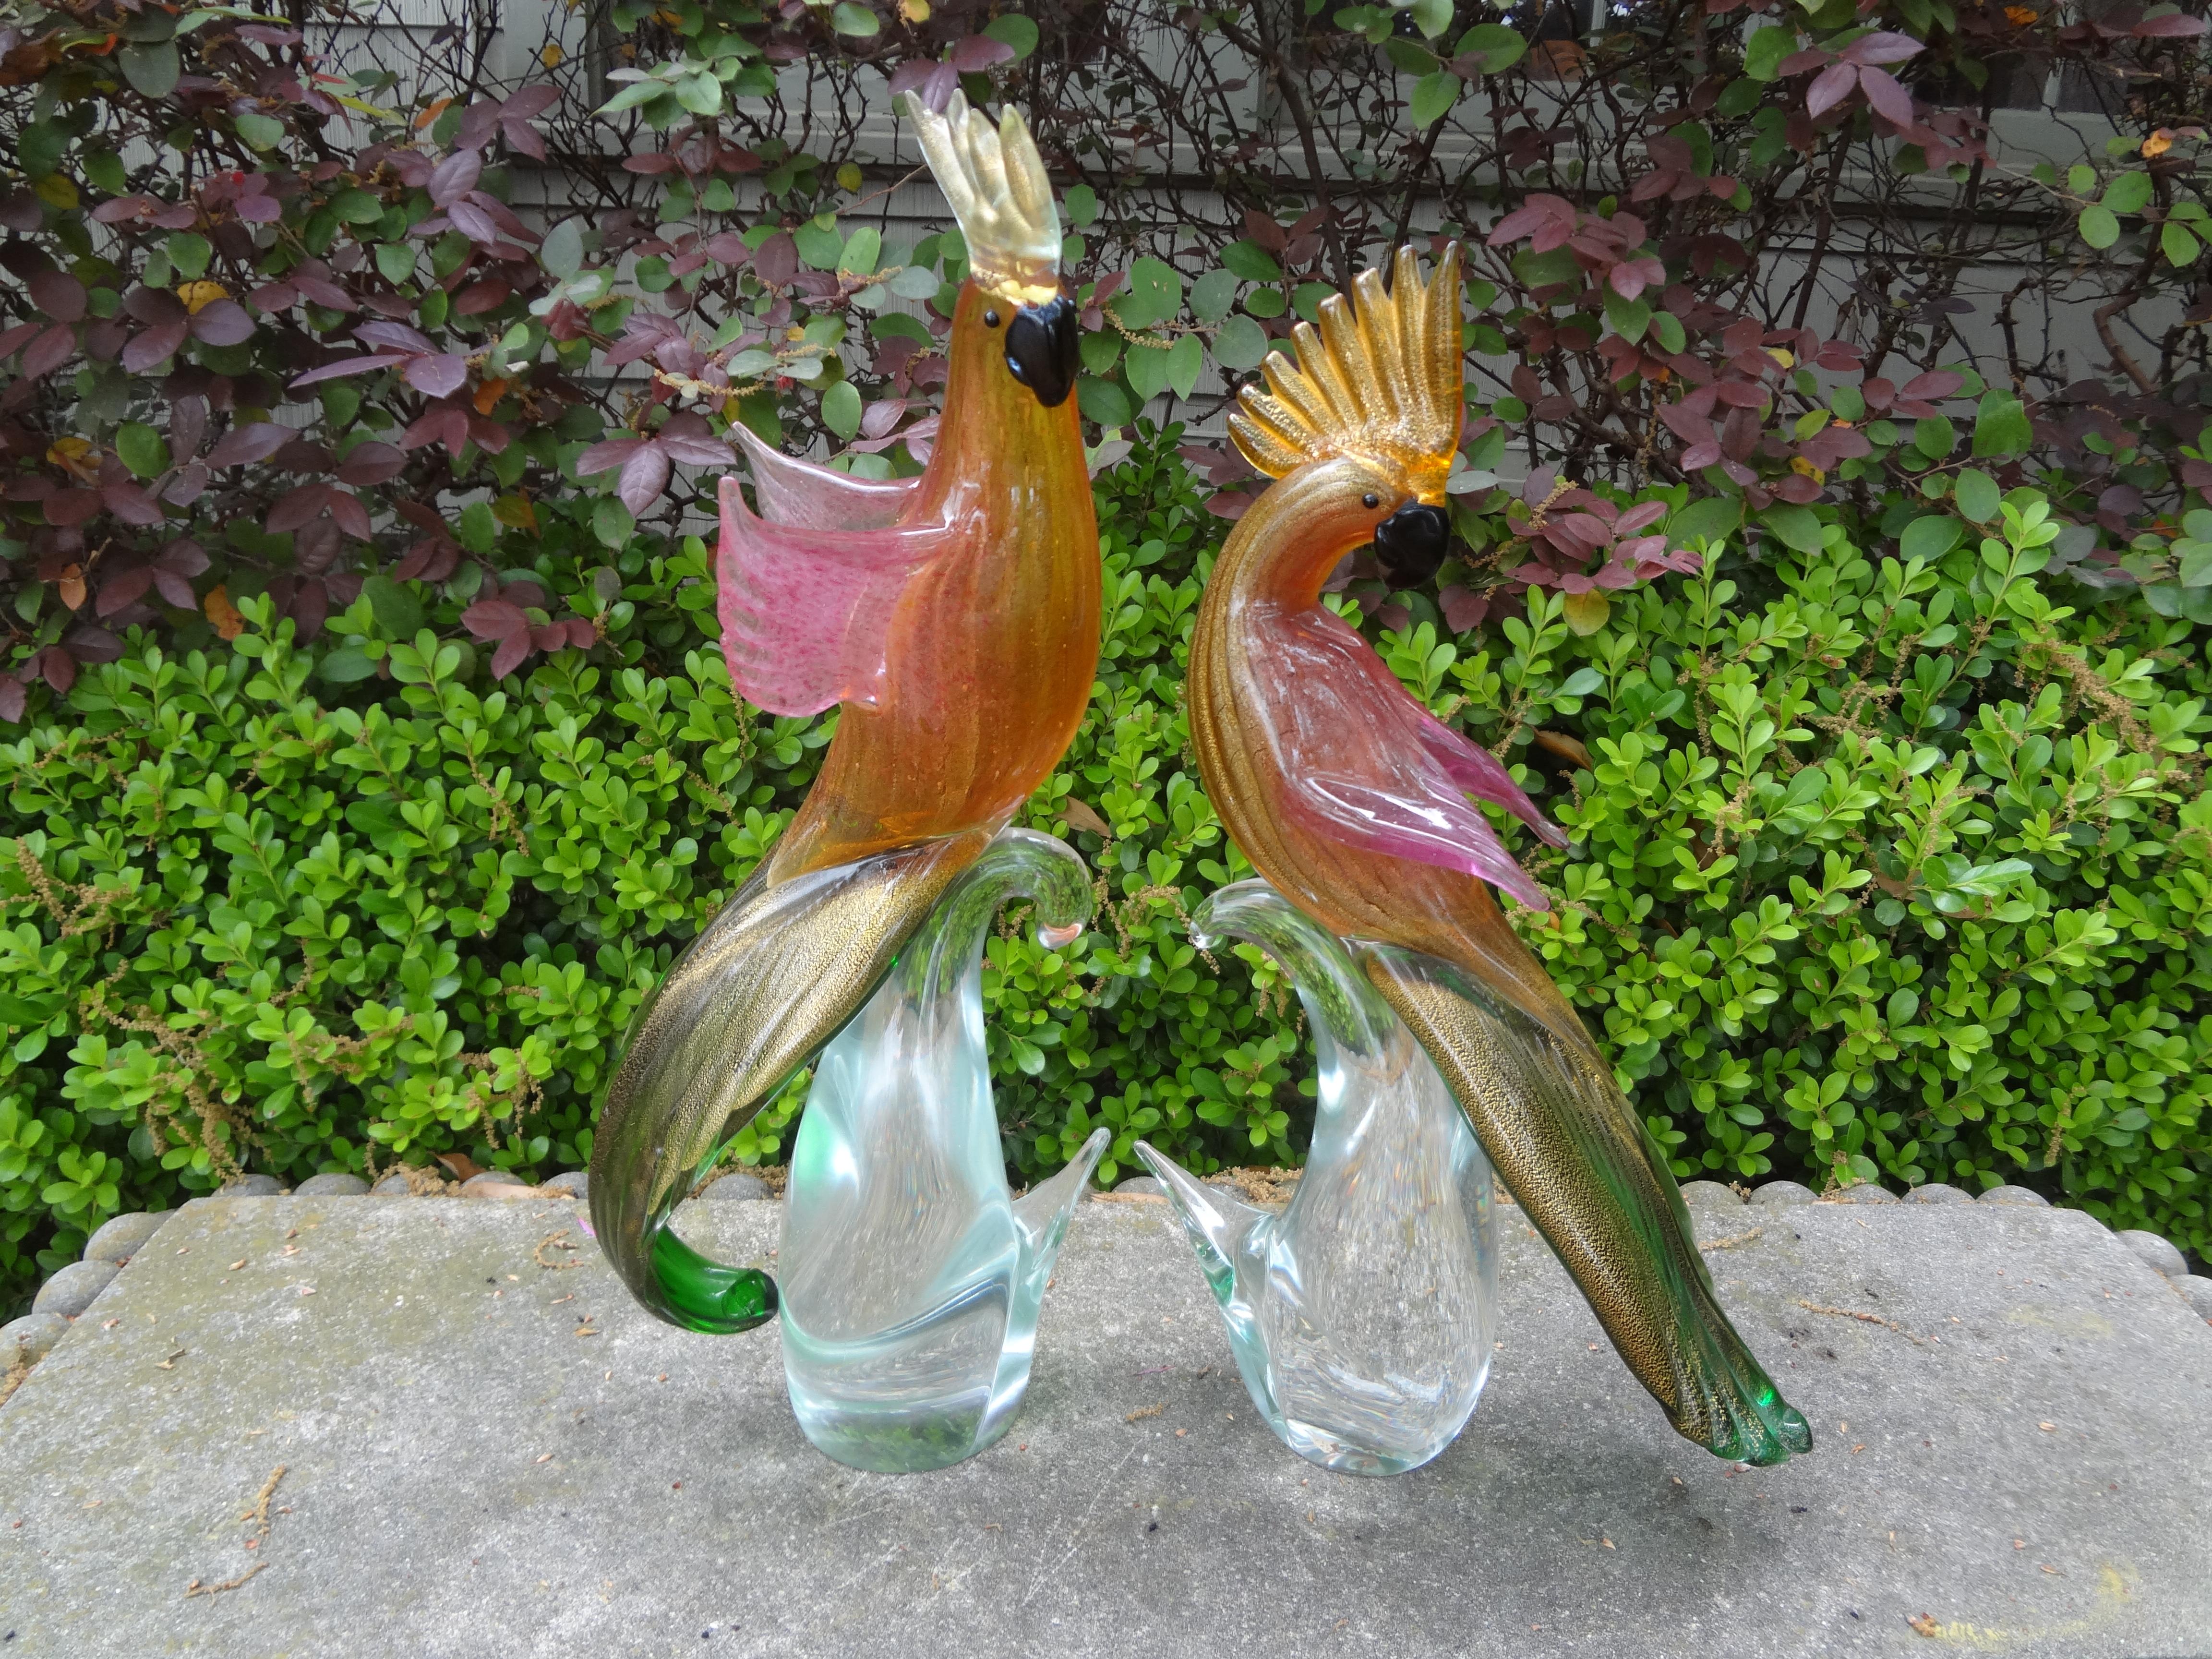 Grande paire de cockatiels ou perroquets en verre de Murano.
Cette jolie paire de cockatiels, perroquets ou oiseaux en verre de Murano a été exécutée en plusieurs couleurs avec des inclusions internes d'or avec un grand souci du détail.
Nos